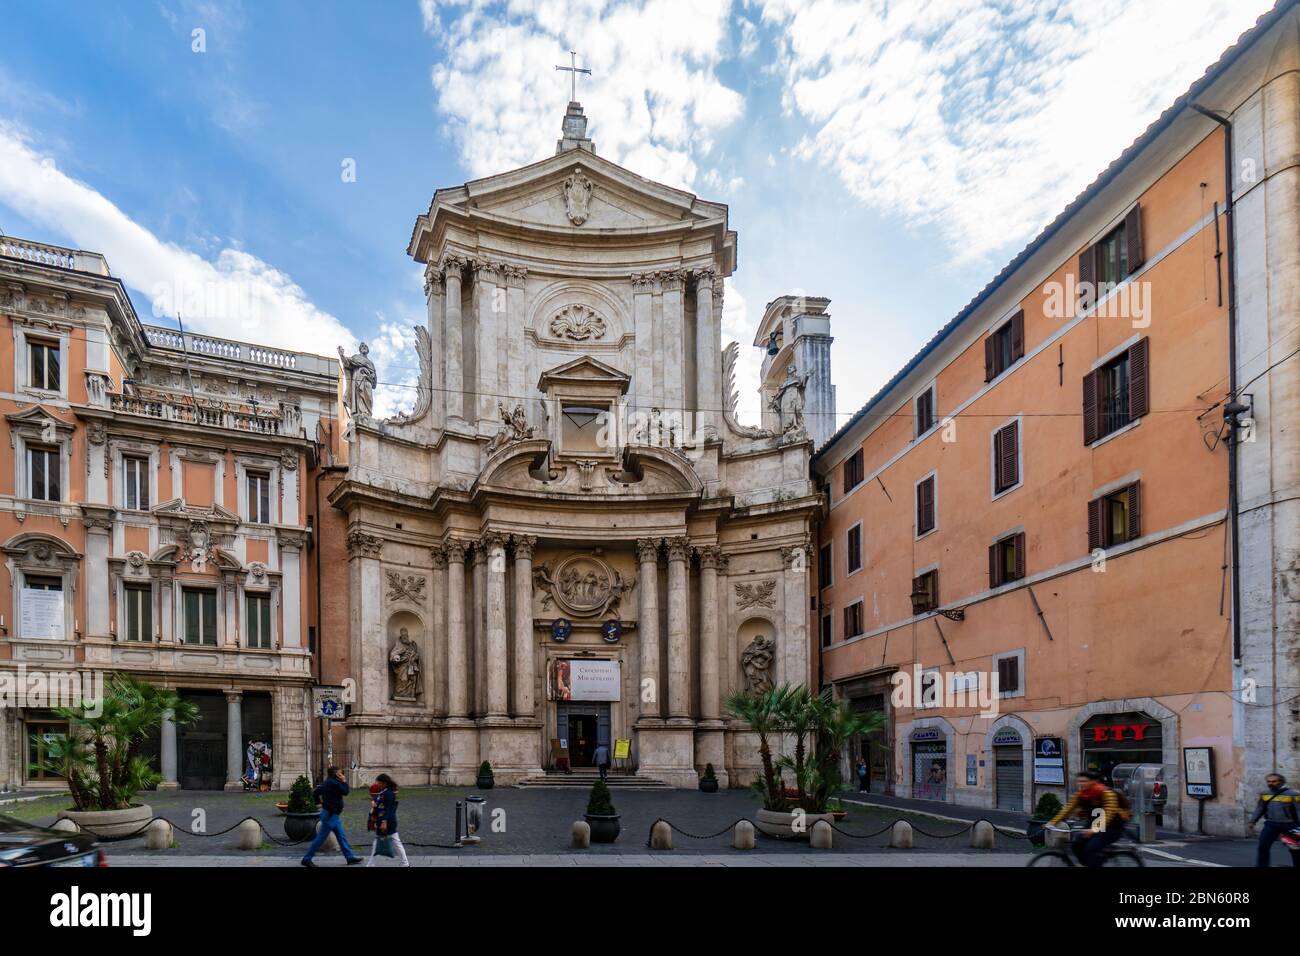 Roma, Italia - 10 03 2018: La piccola chiesa di San Marcello al corso del XVI secolo, sulla trafficata Via del corso a Roma Foto Stock